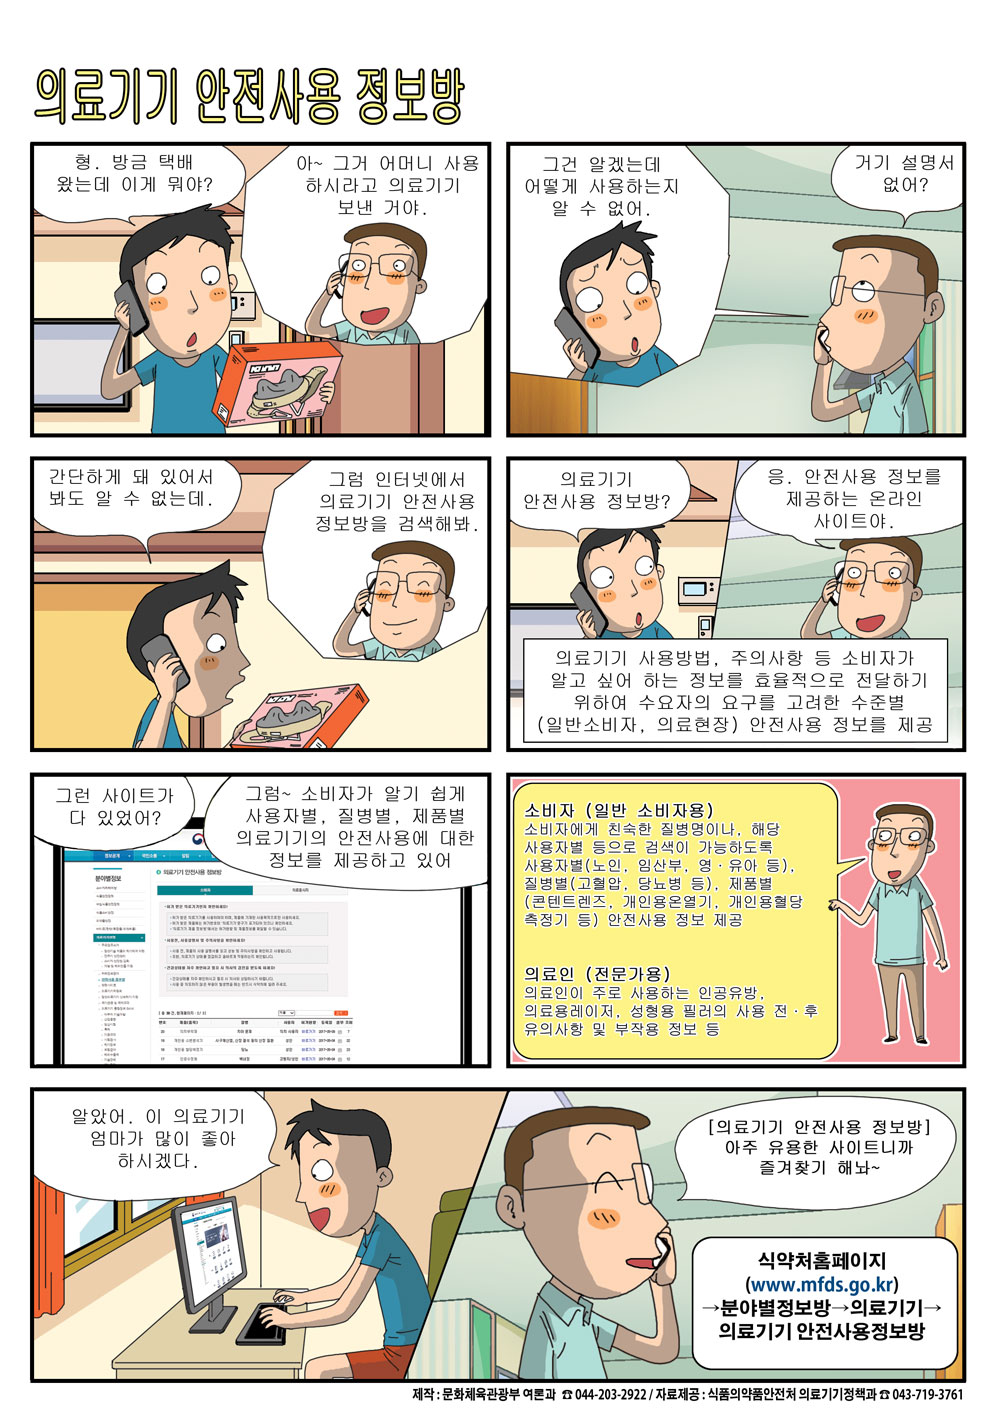 [2017. 6월 정책만화]의료기기 안전사용 정보방